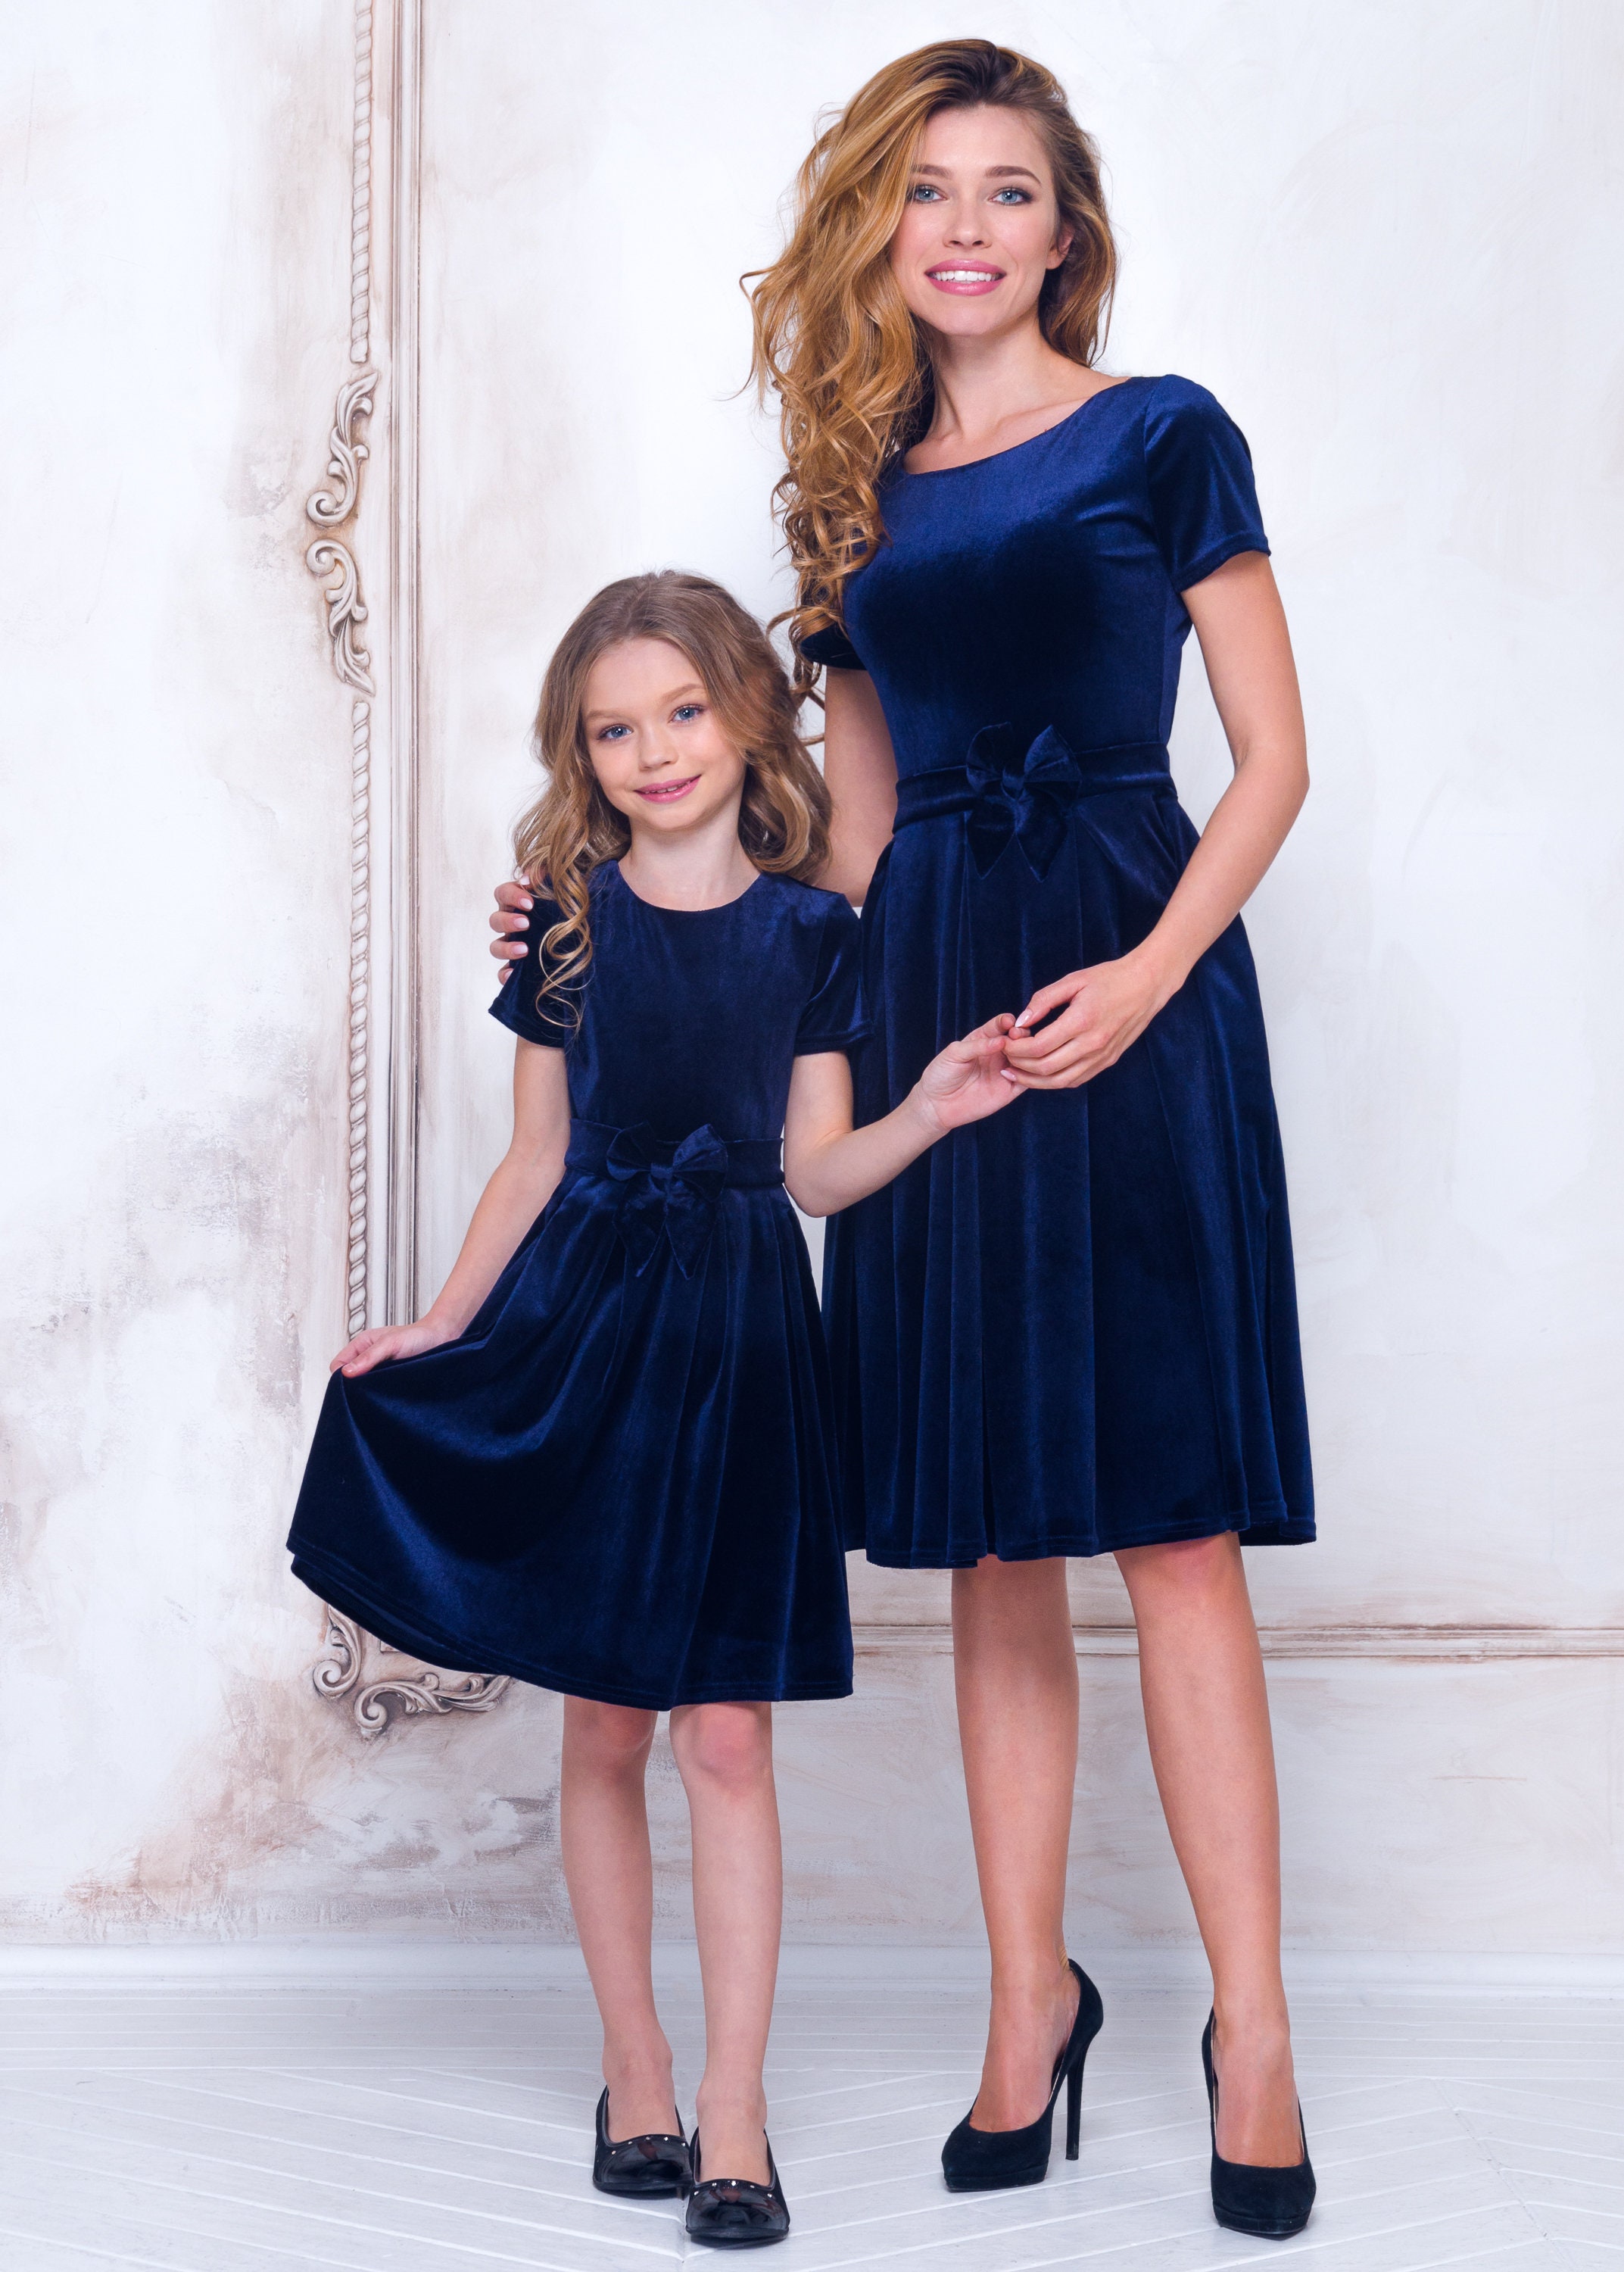 KINDER Kleider Party Zara Casuales Kleid Blau 3Y Rabatt 62 % 